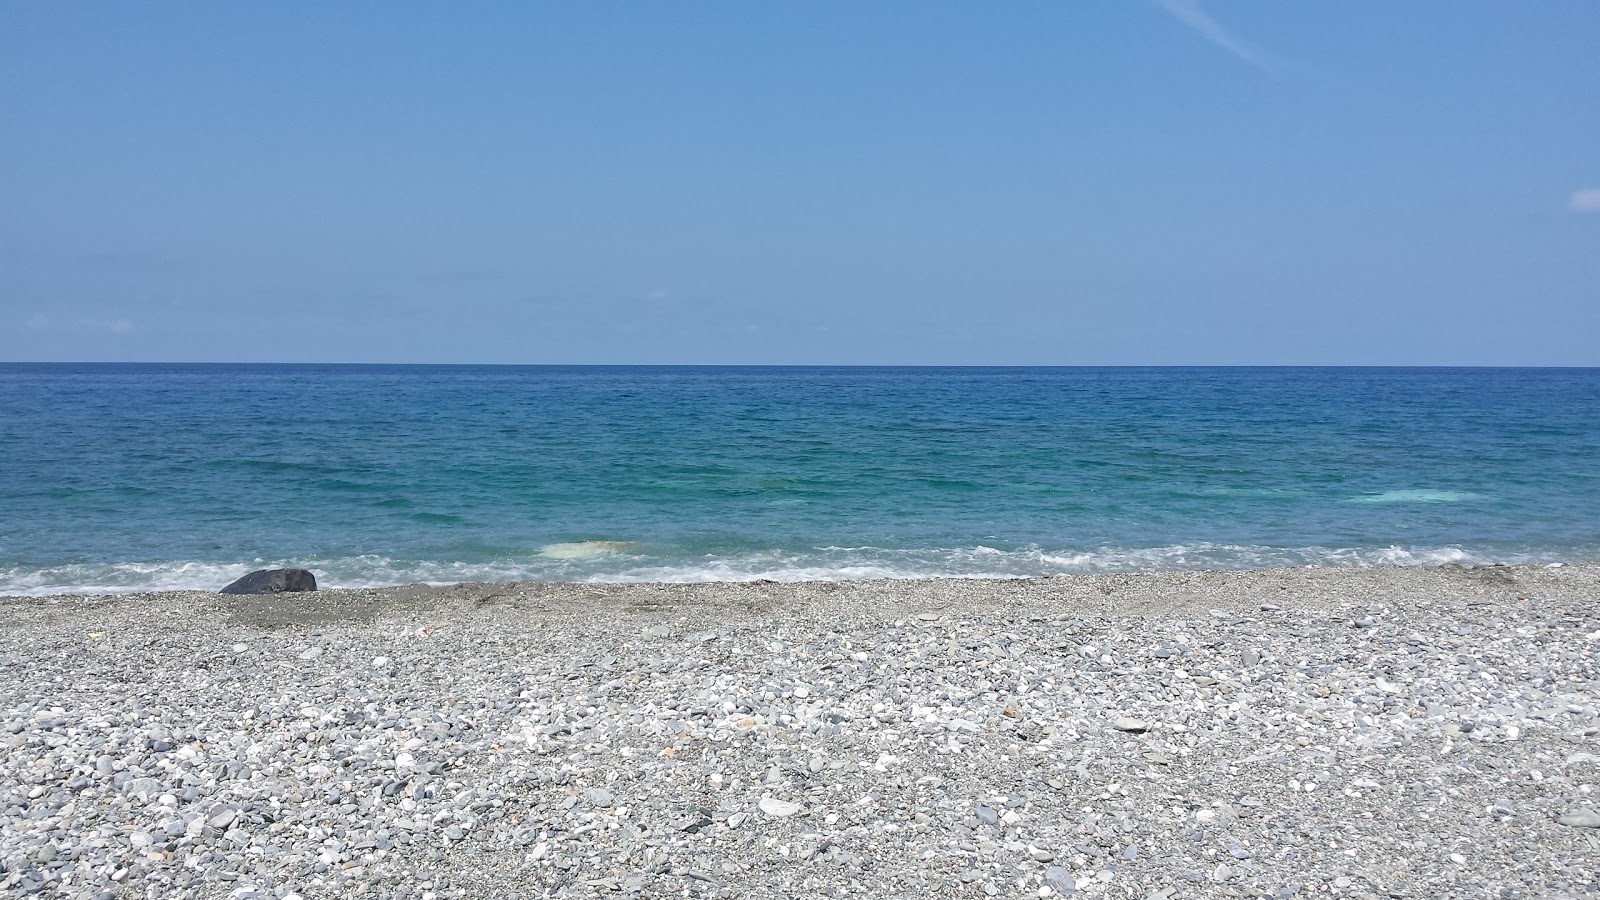 Spiaggia Amantea'in fotoğrafı uçurumlarla desteklenmiş